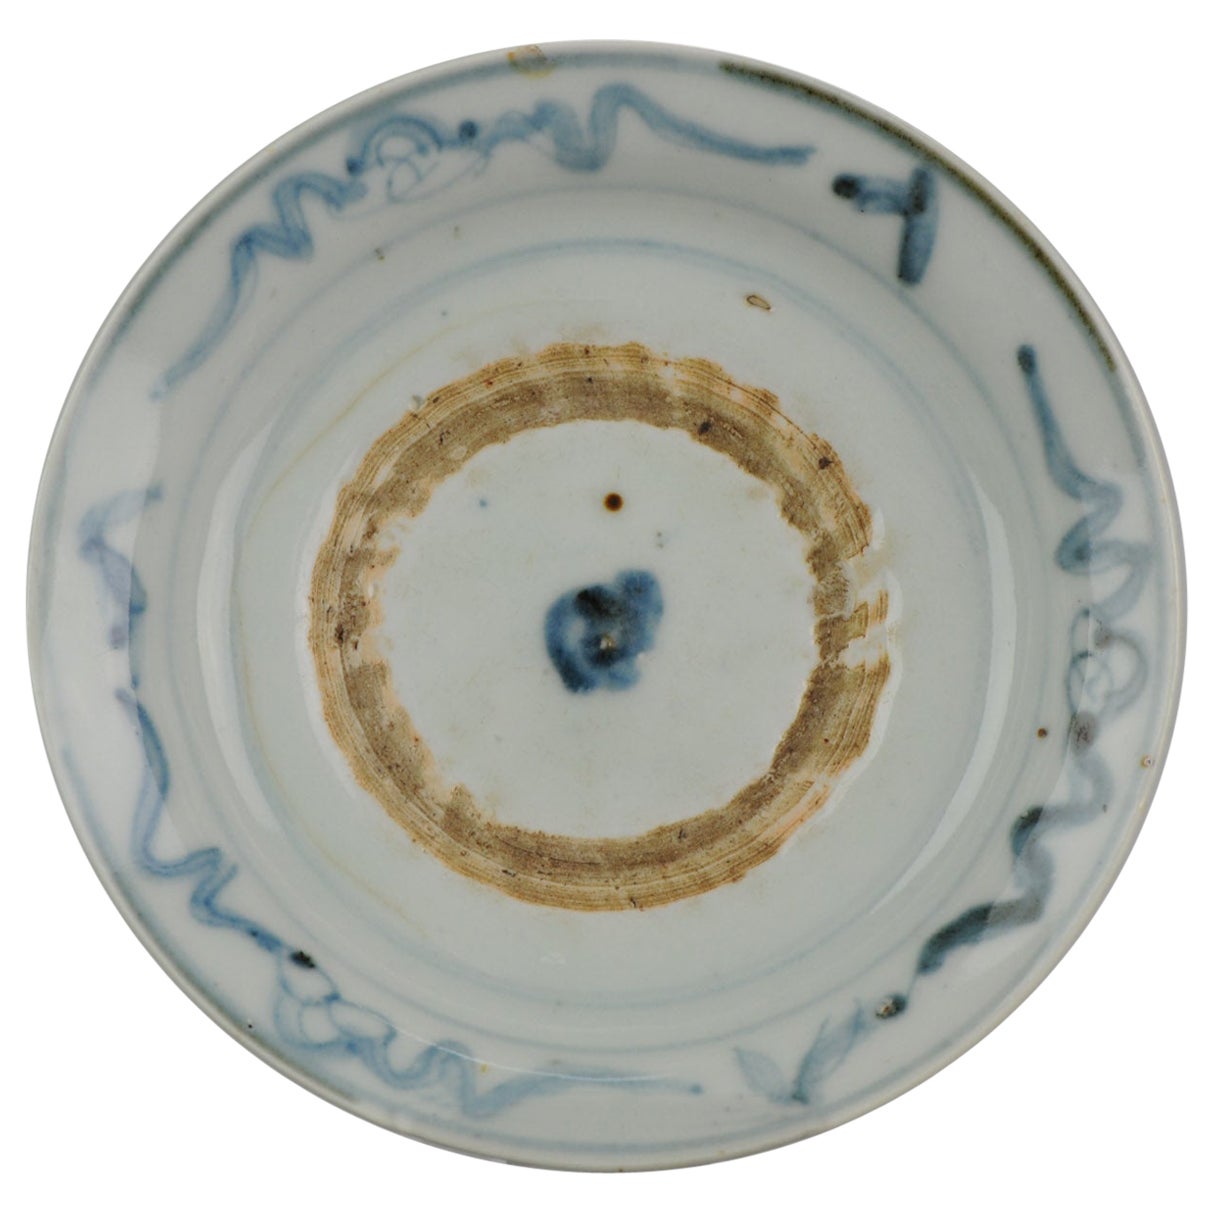 Ancienne assiette en porcelaine chinoise Swatow Zhangzhou Dynastie Ming, 16/17ème siècle